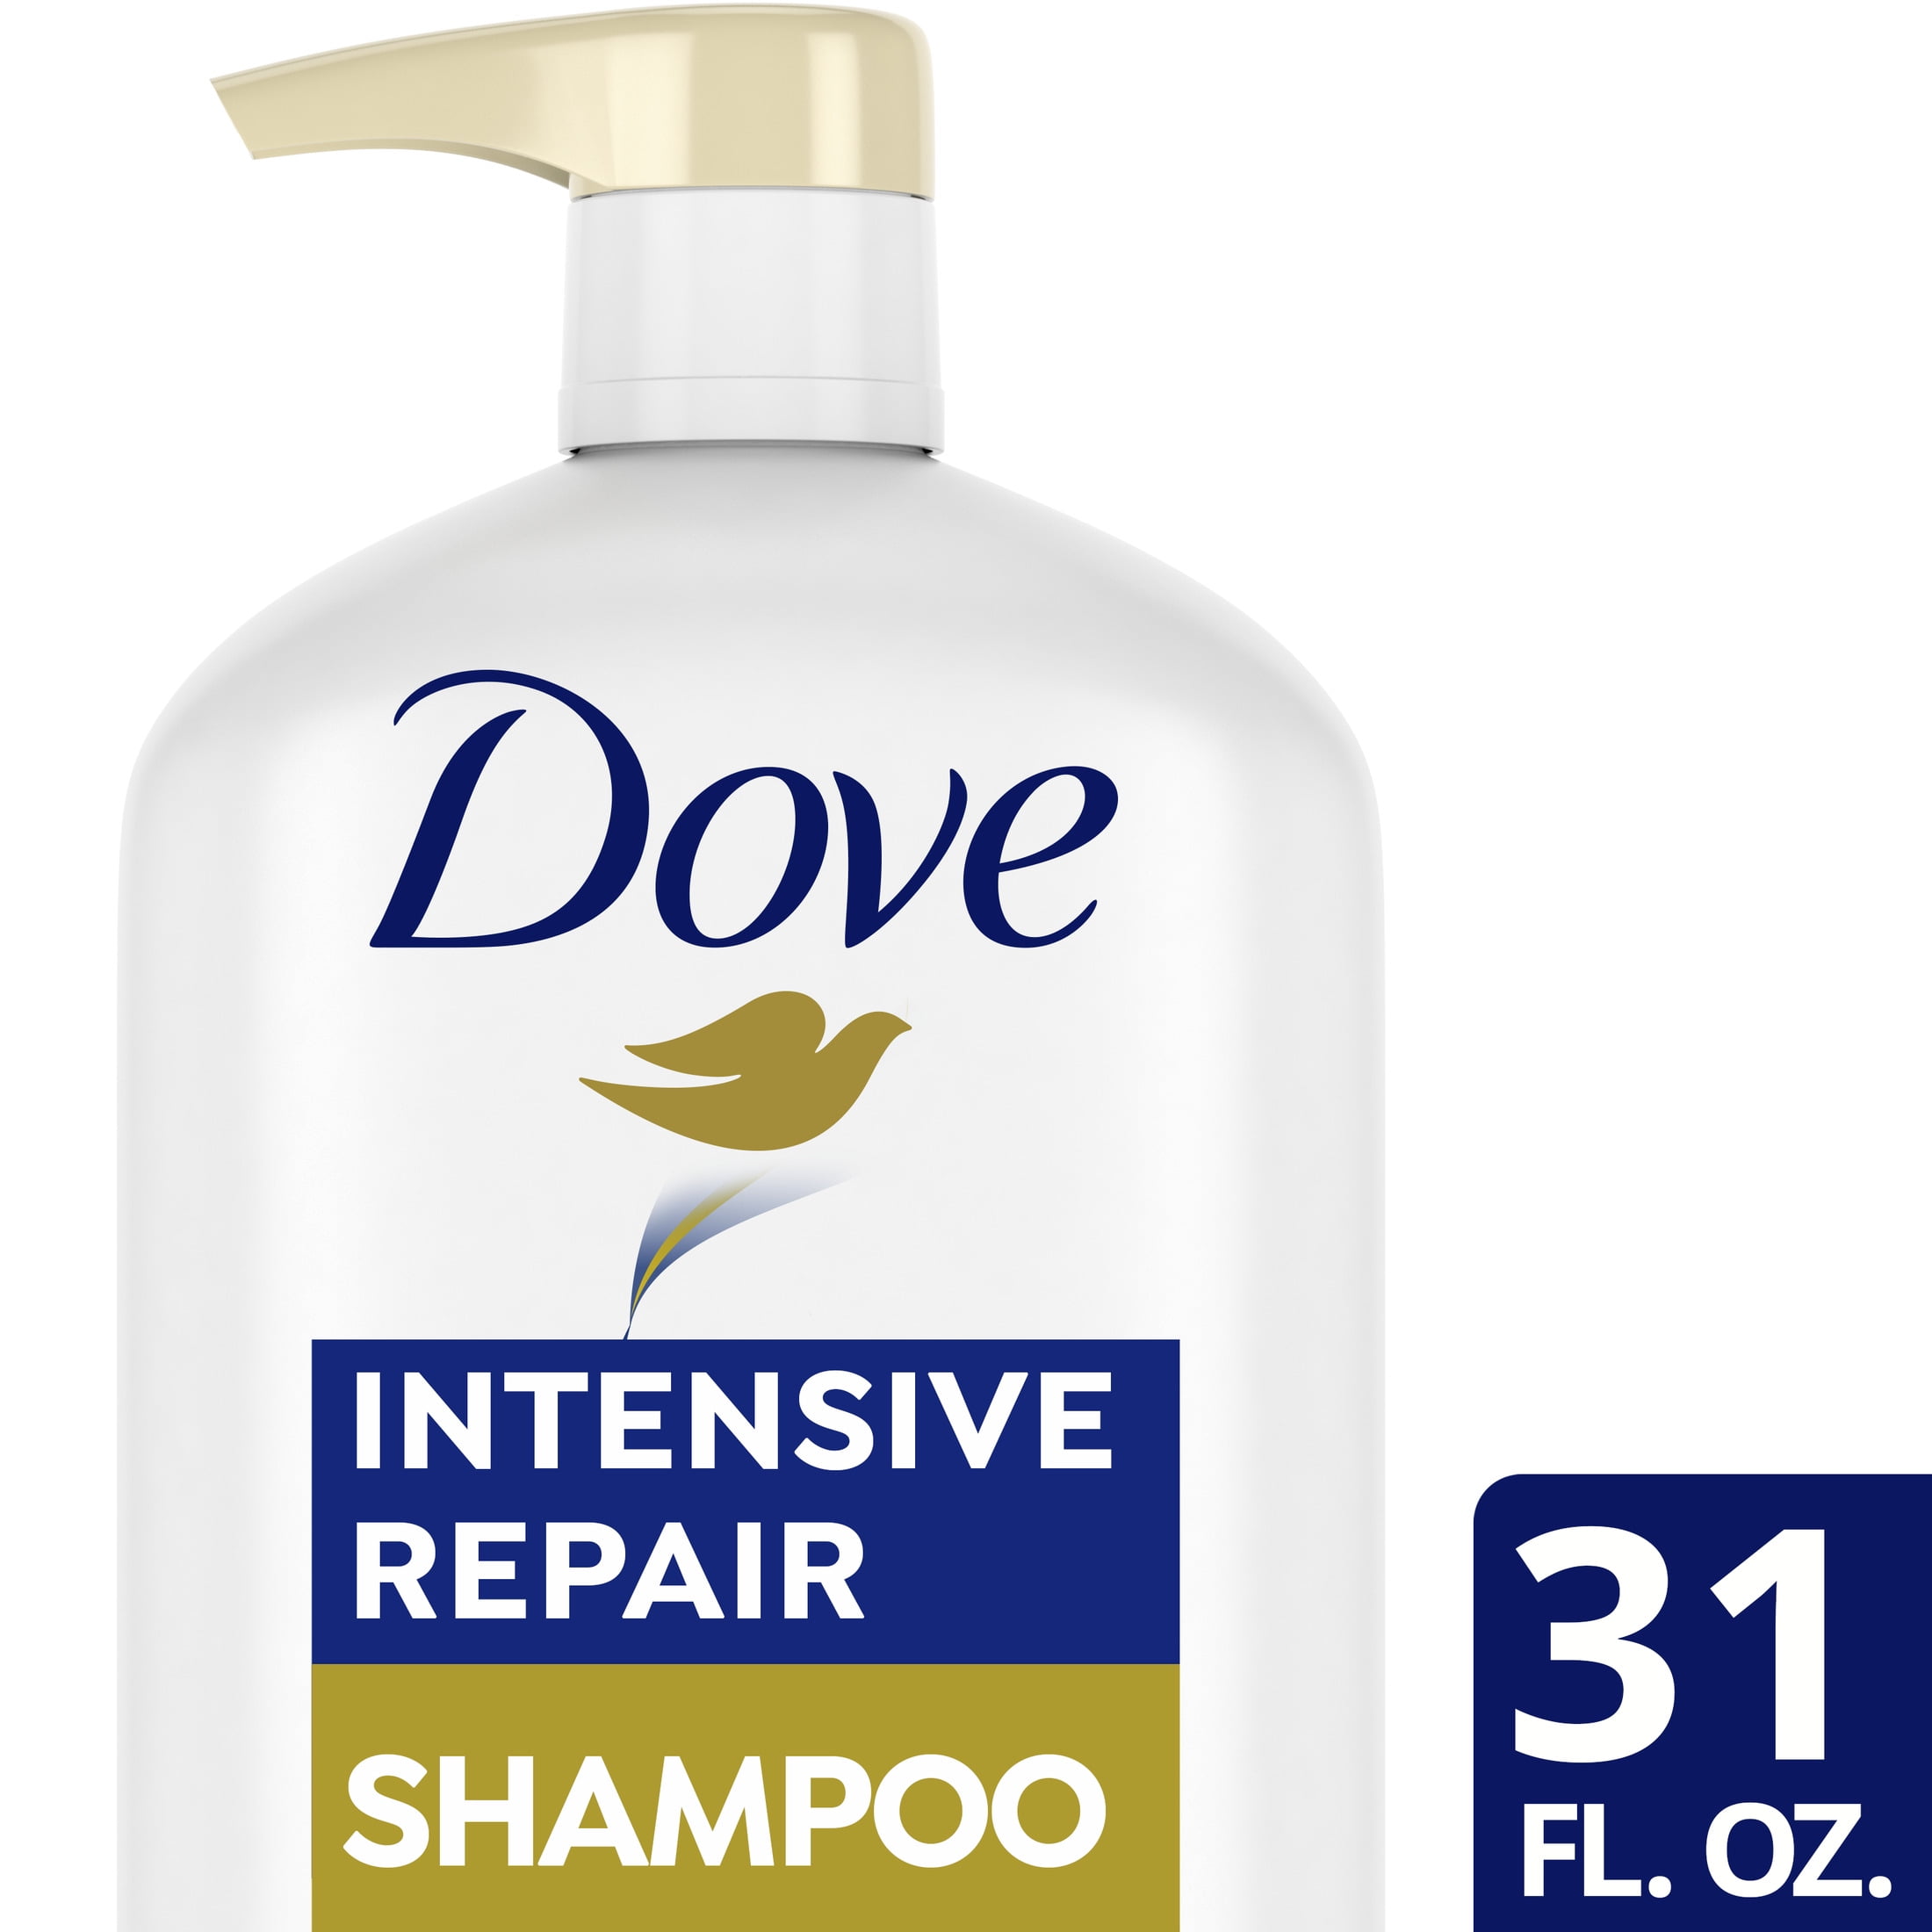 Dove Intensive Repair Shampoo Revives Damaged Hair 31 fl oz